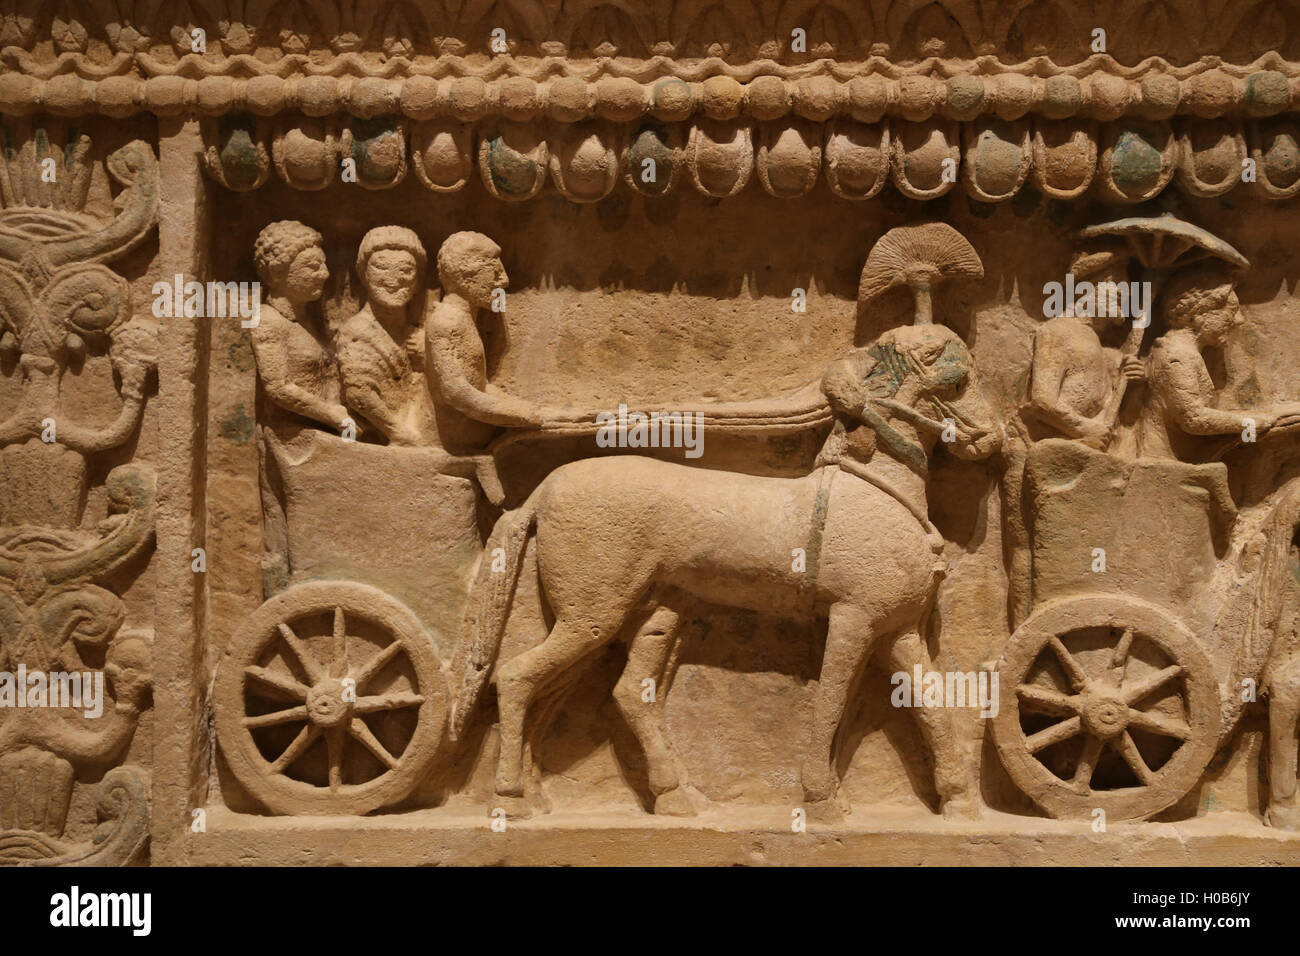 Il sarcofago di Amathus. Cipriota, arcaico, secondo trimestre del V secolo A.C. Da Amathus. Rilievo: la processione del carro. Foto Stock